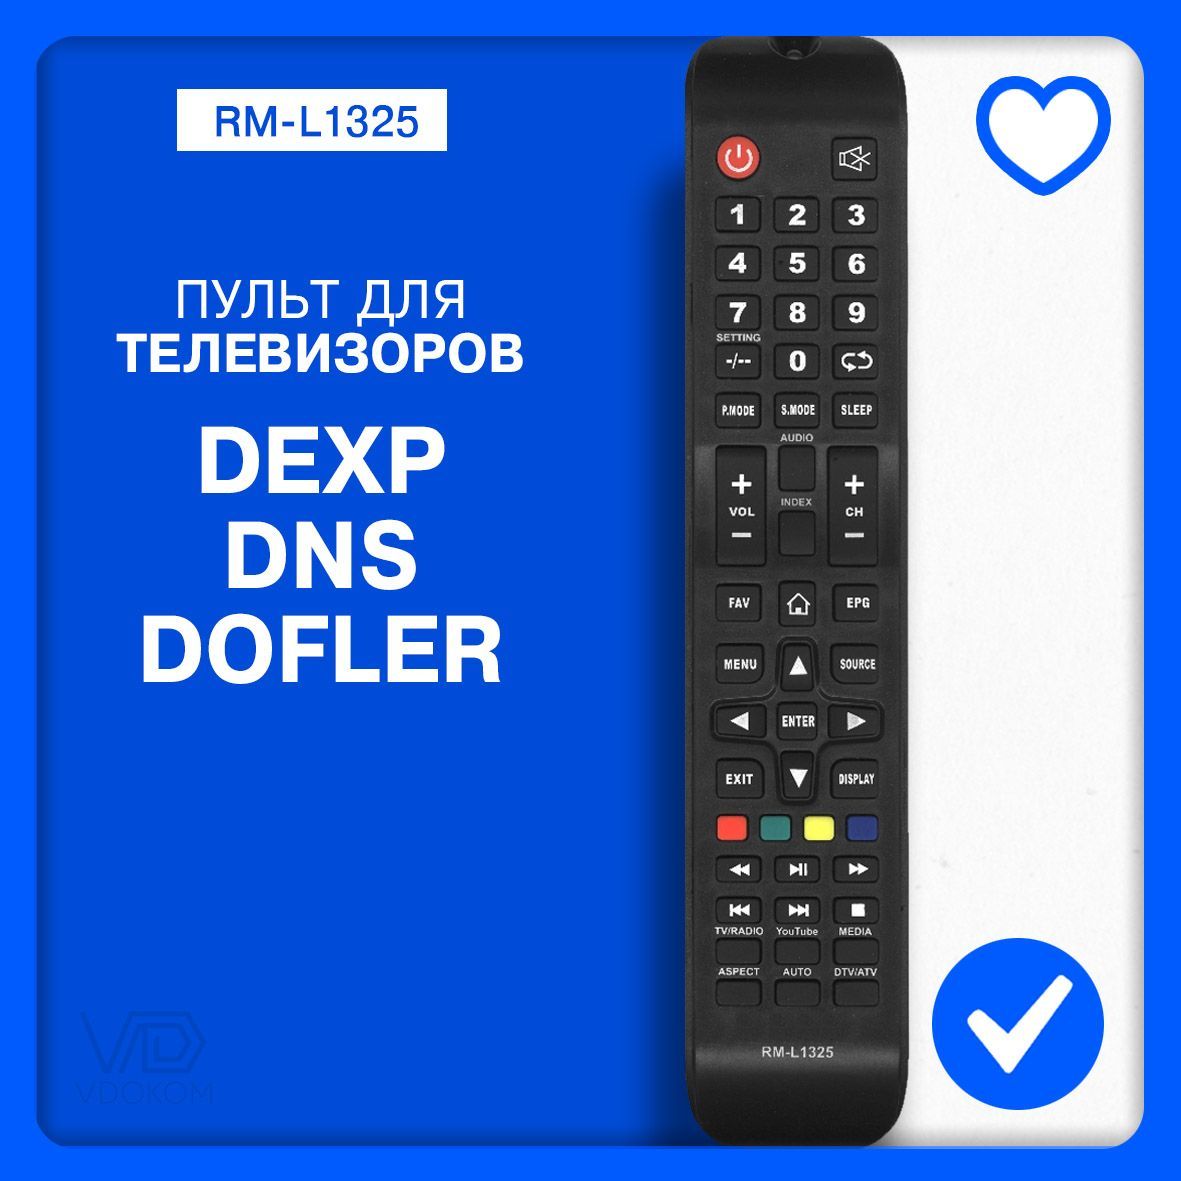 Ремонт телевизоров DEXP в Смоленске | NPOLAB